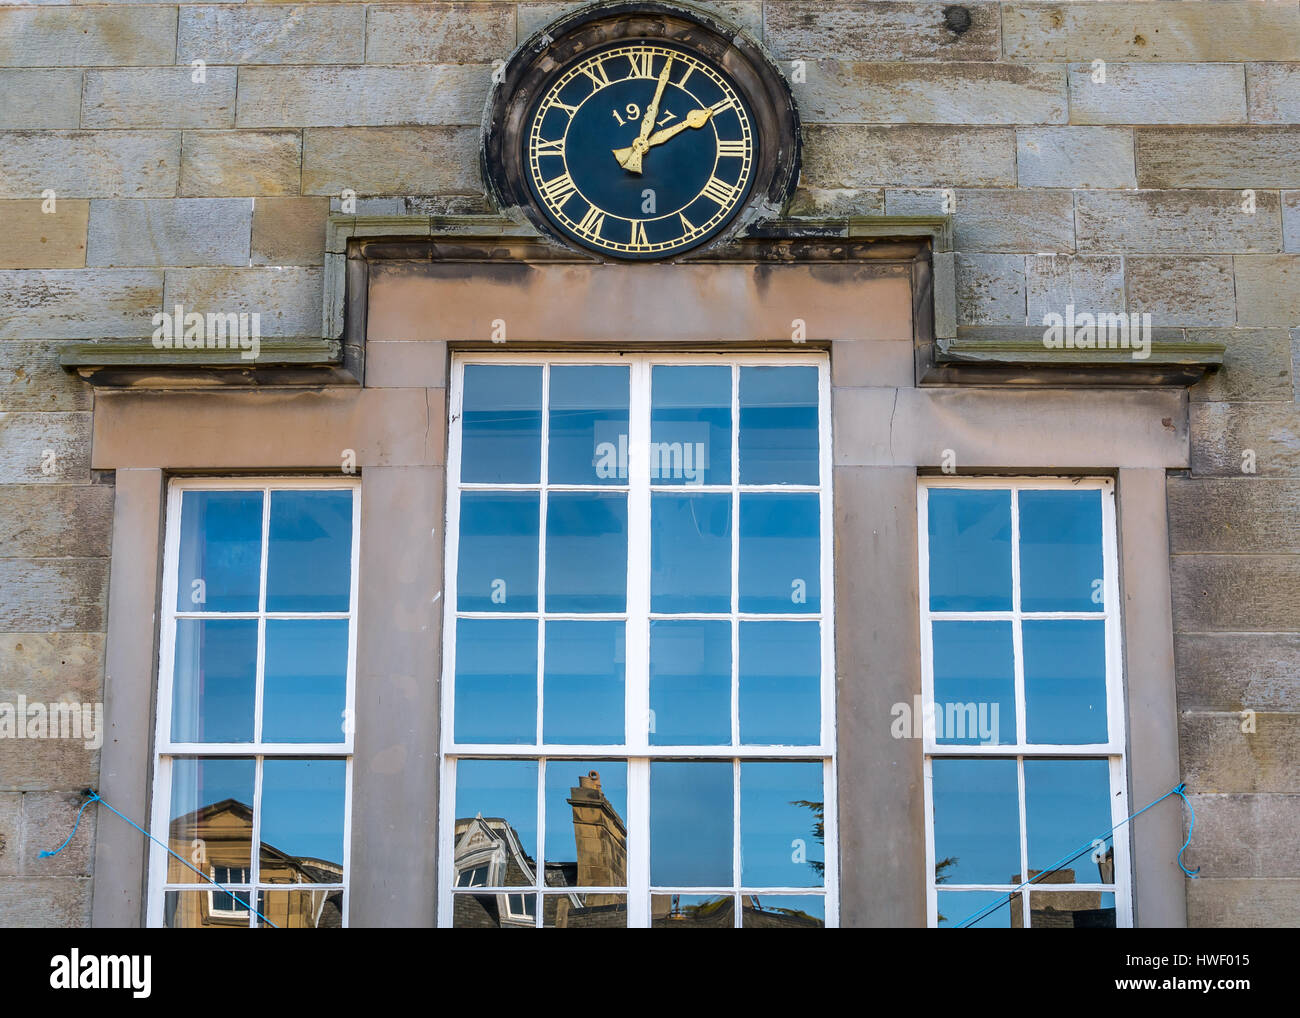 Zifferblatt und Fenster Reflexion an einem sonnigen Tag von Corn Exchange Gebäude, Court Street, Haddington, East Lothian, Schottland, Großbritannien Stockfoto